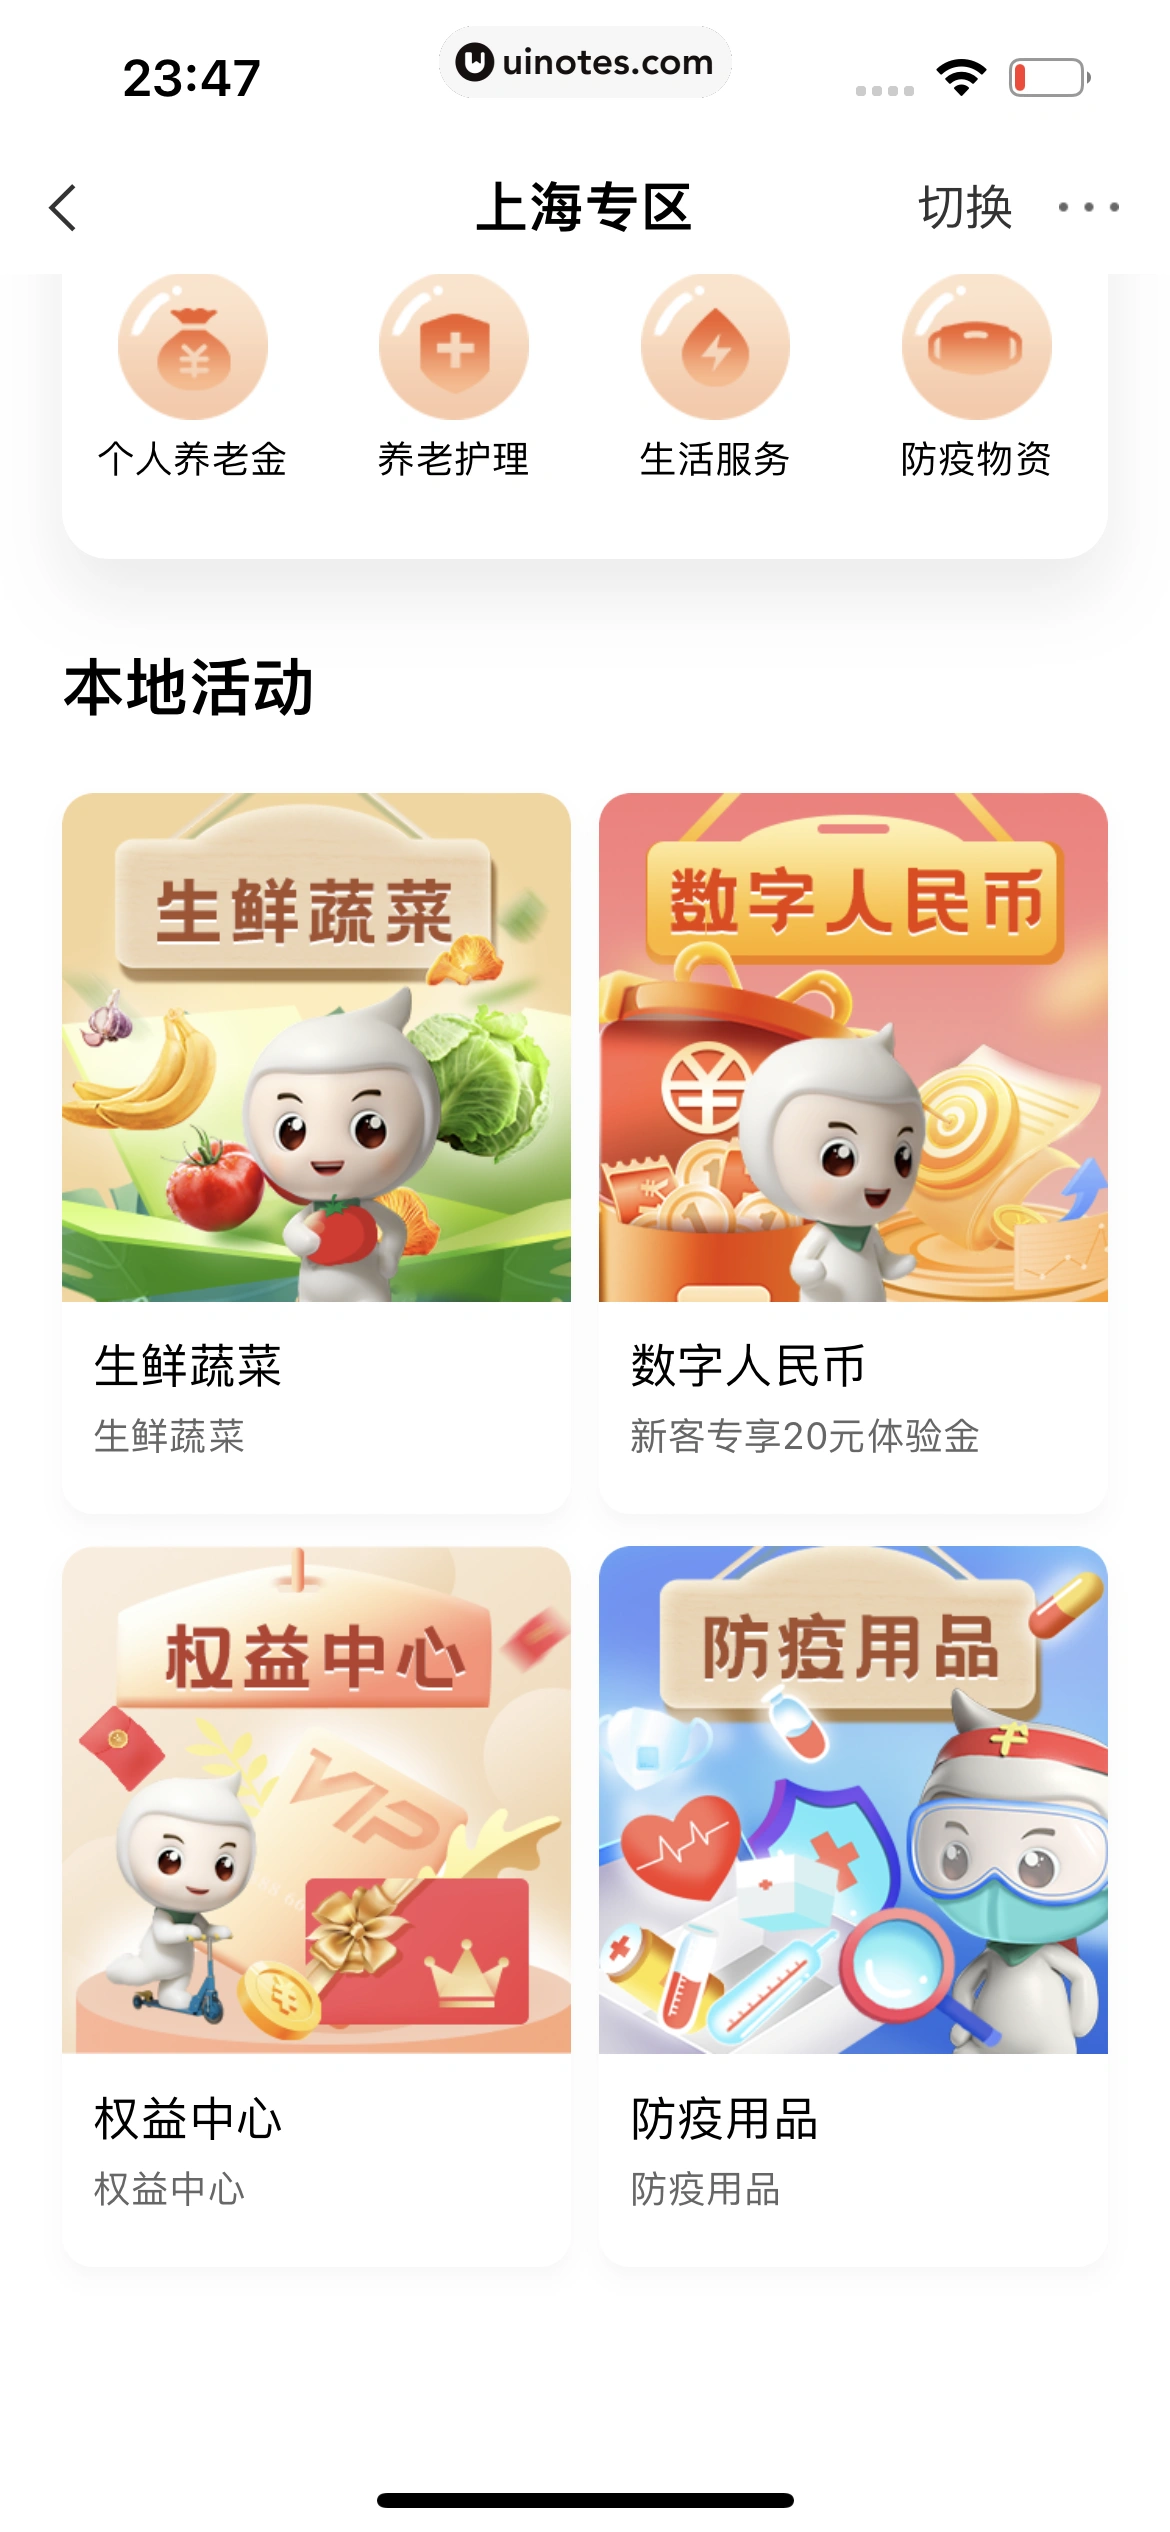 中国农业银行 App 截图 176 - UI Notes